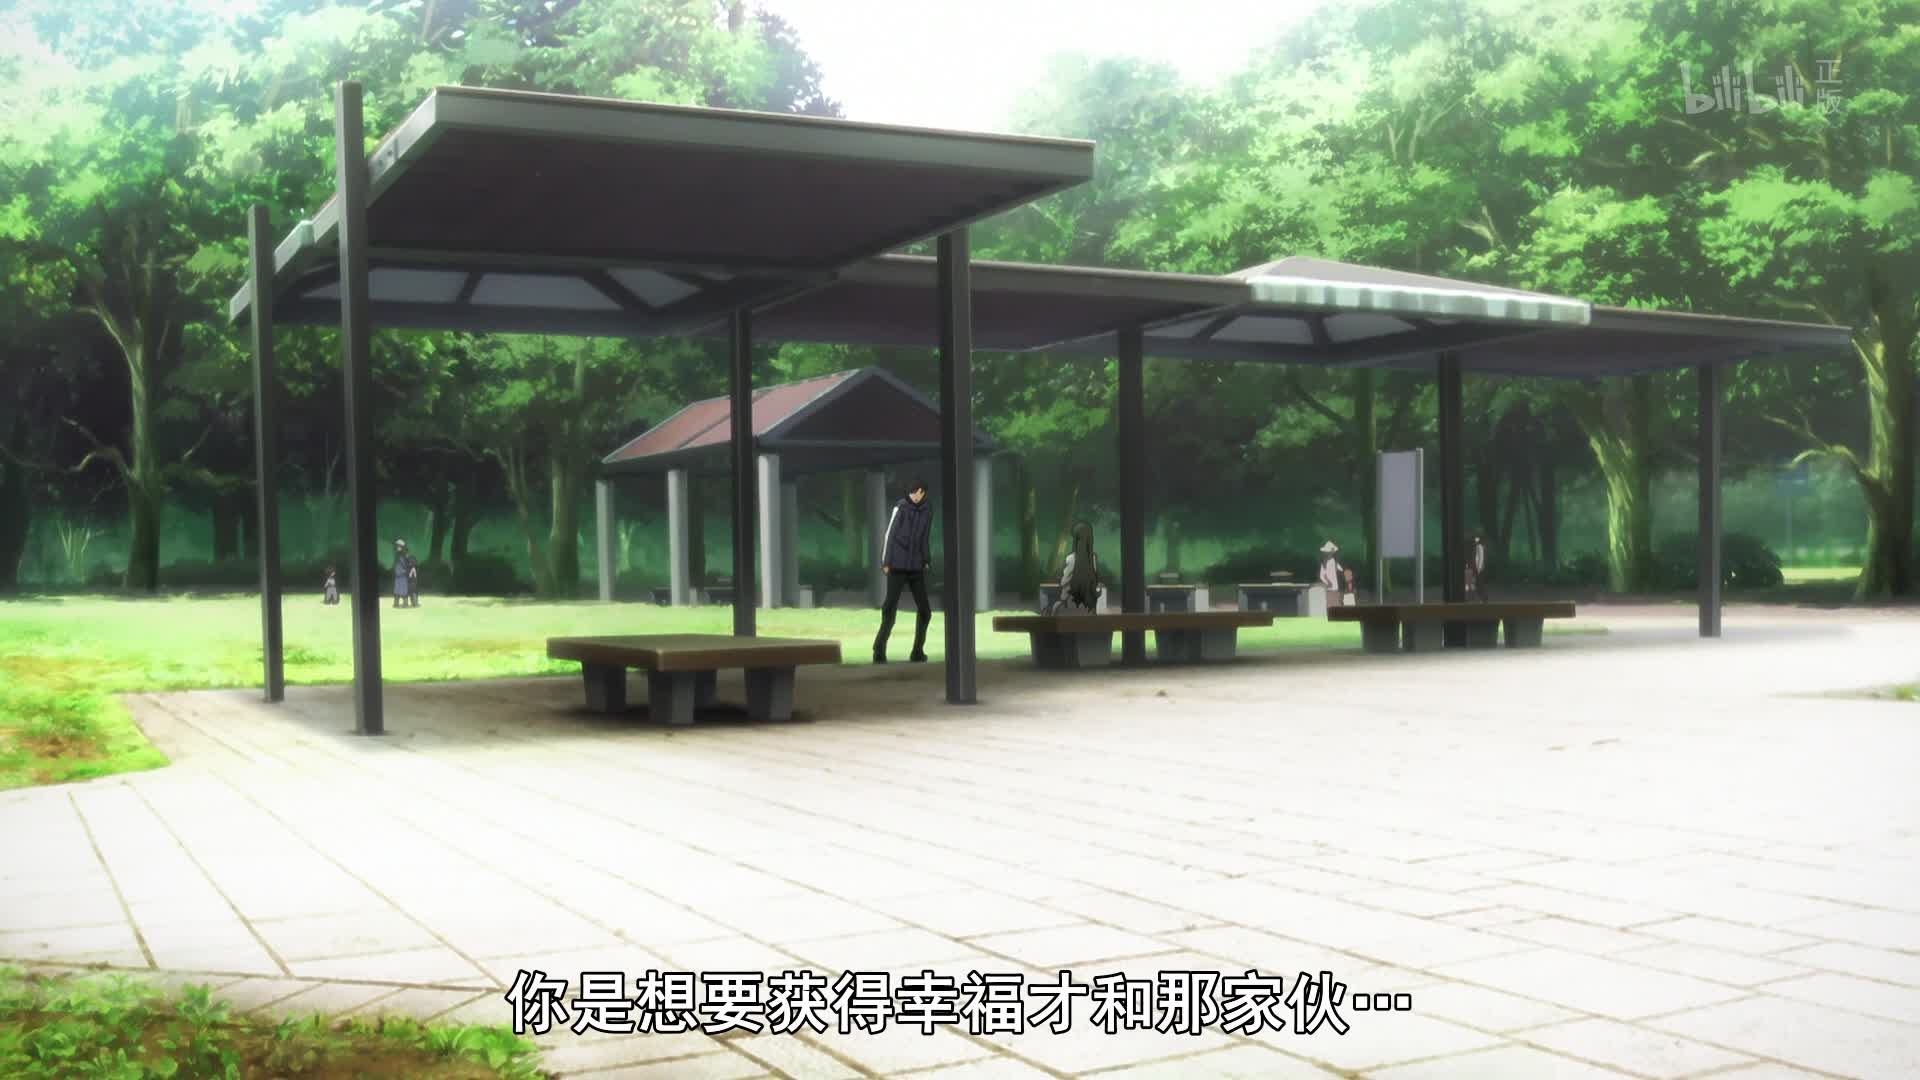 Fate/Zero 第一季第7话-番剧-全集-高清独家在线观看-bilibili-哔哩哔哩